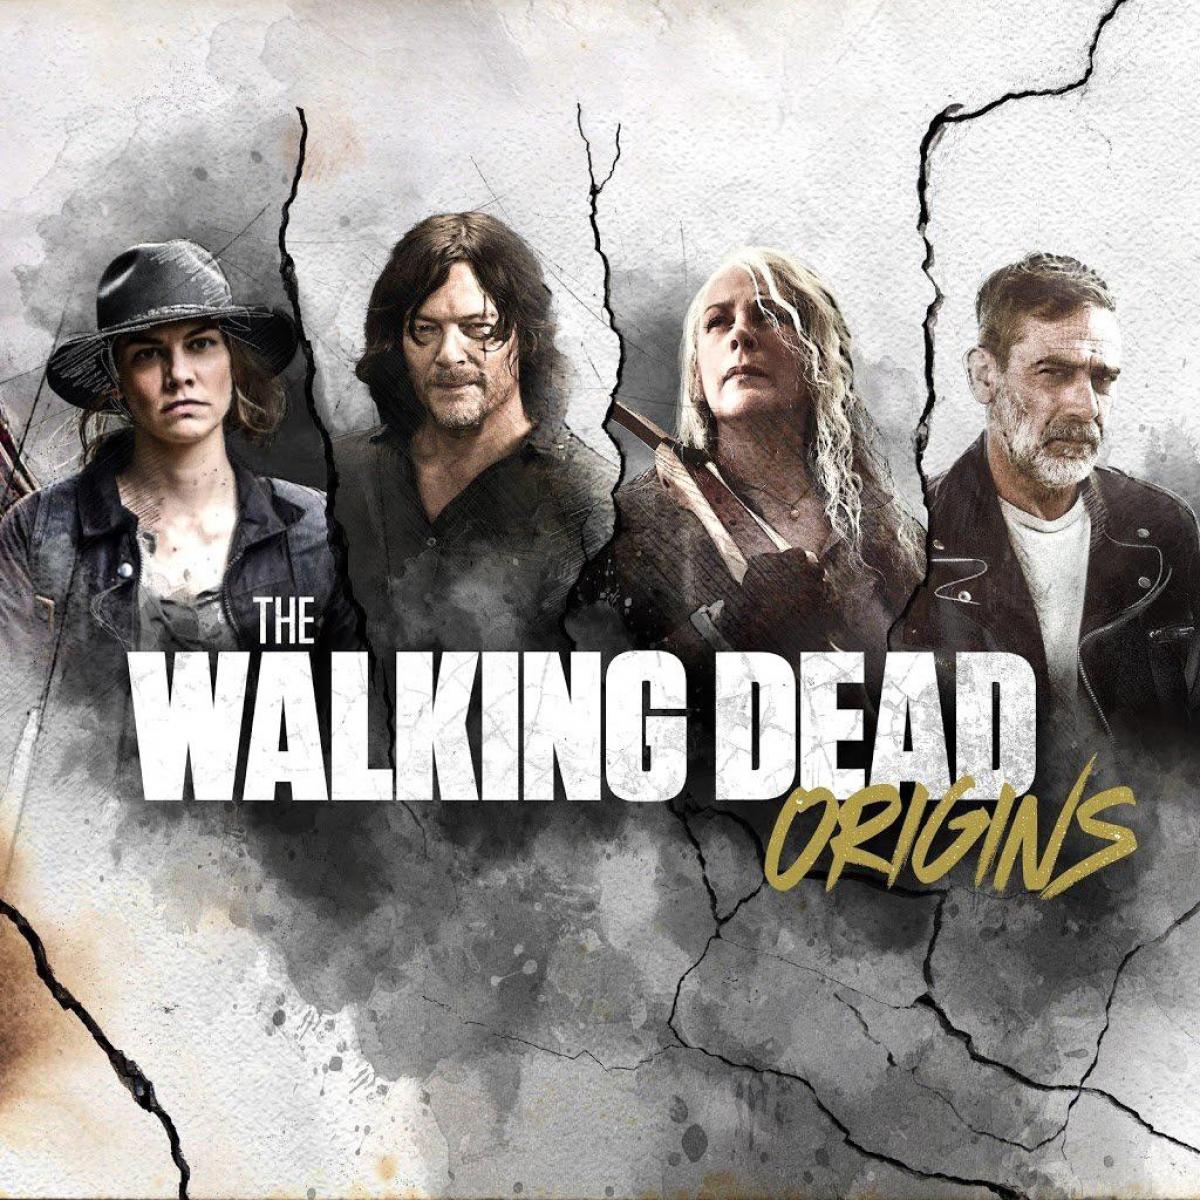 The Walking Dead (season 3) - Wikipedia